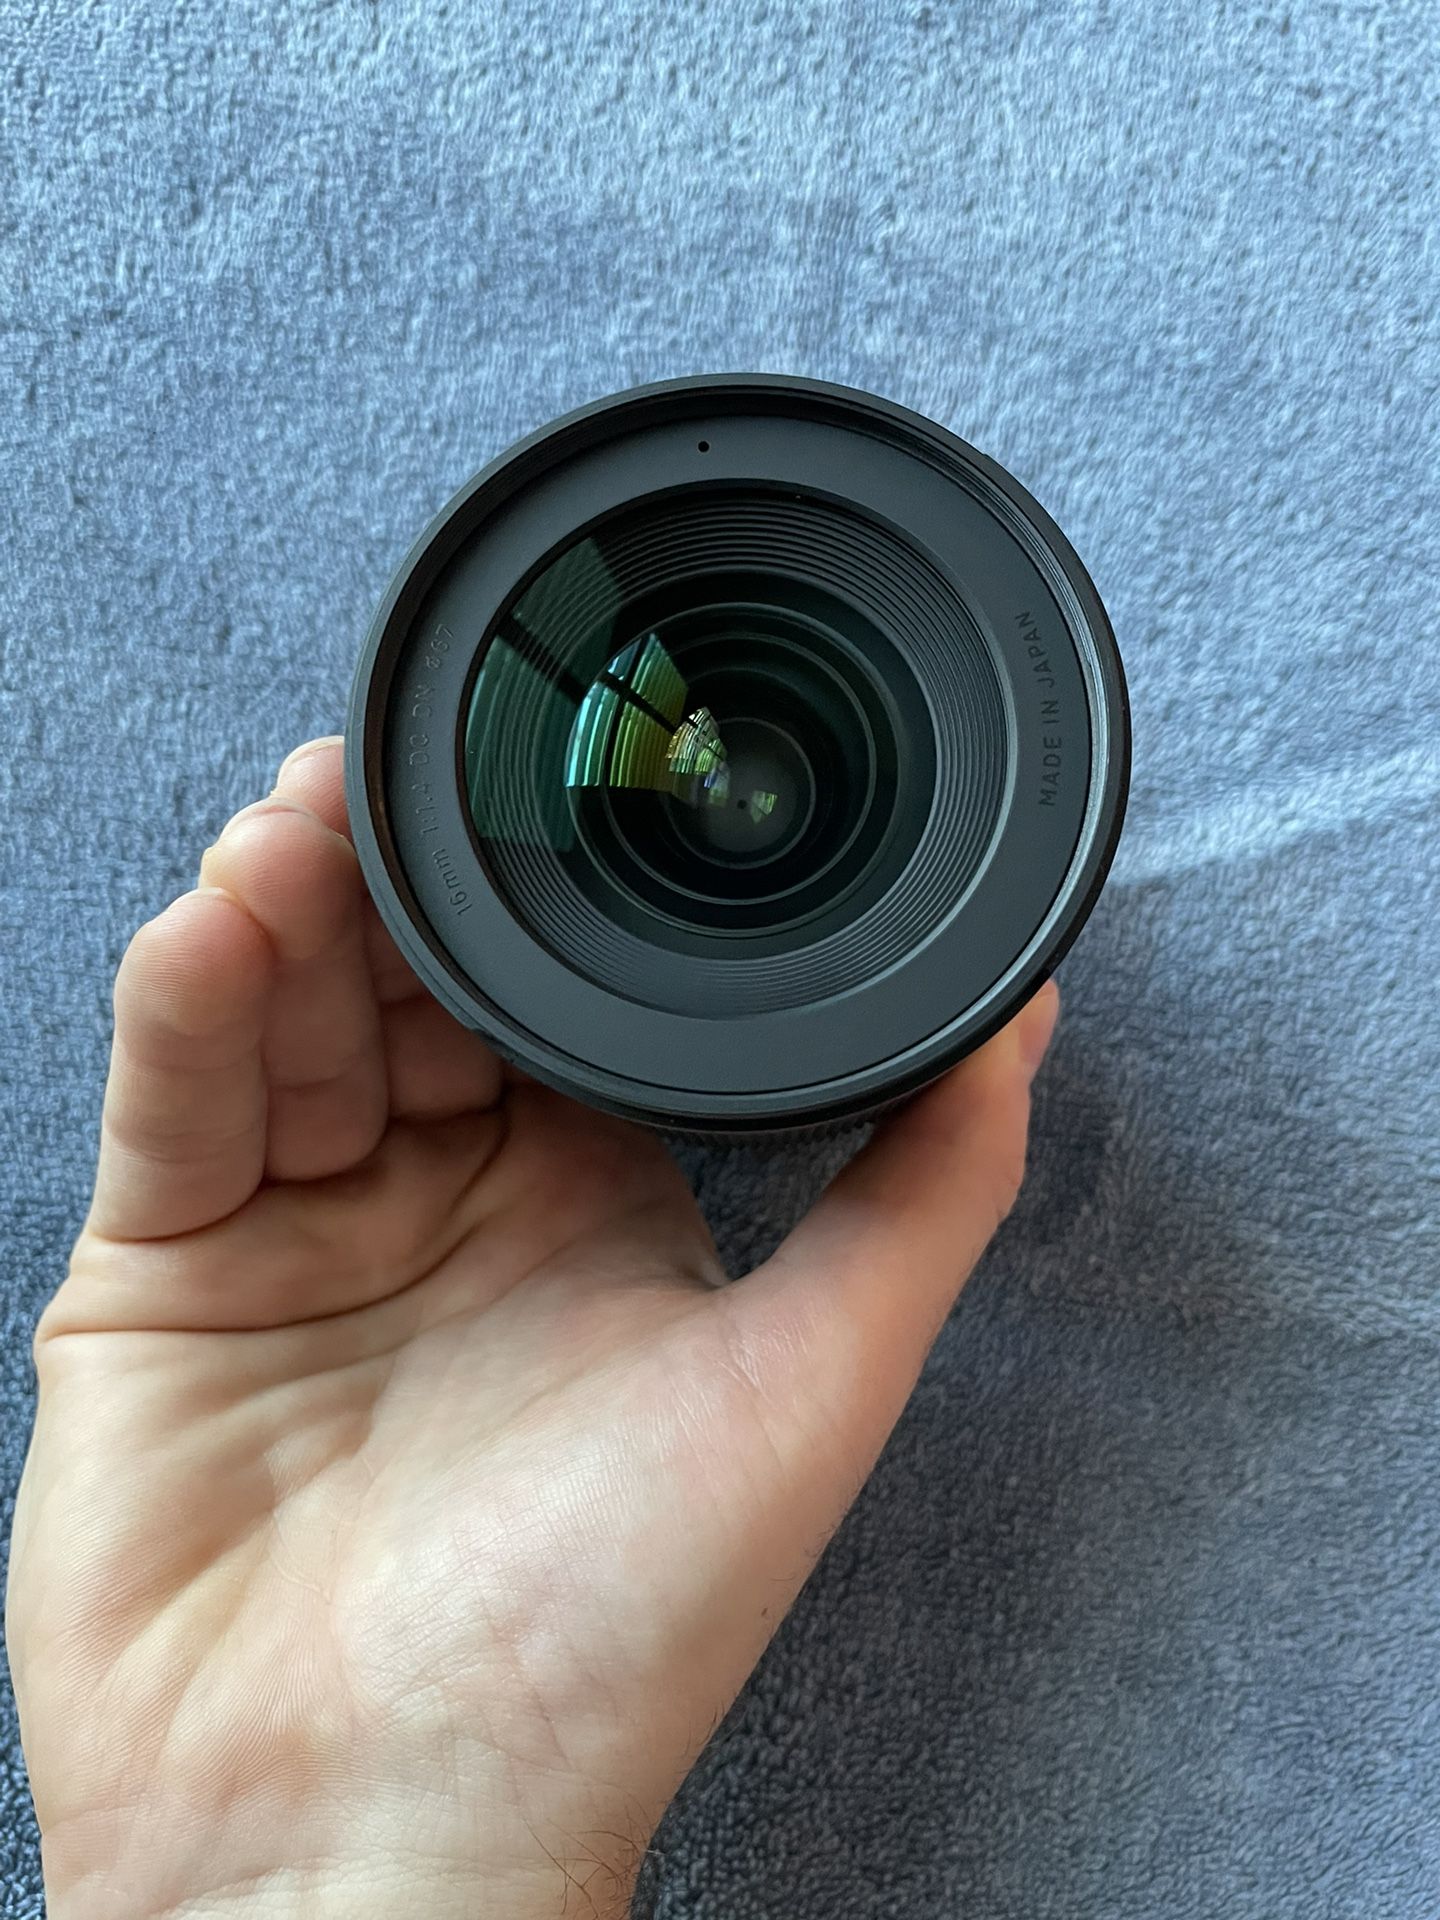 Sigma 16mm f/1.4 DC DN Contemporary Lens for Sony E